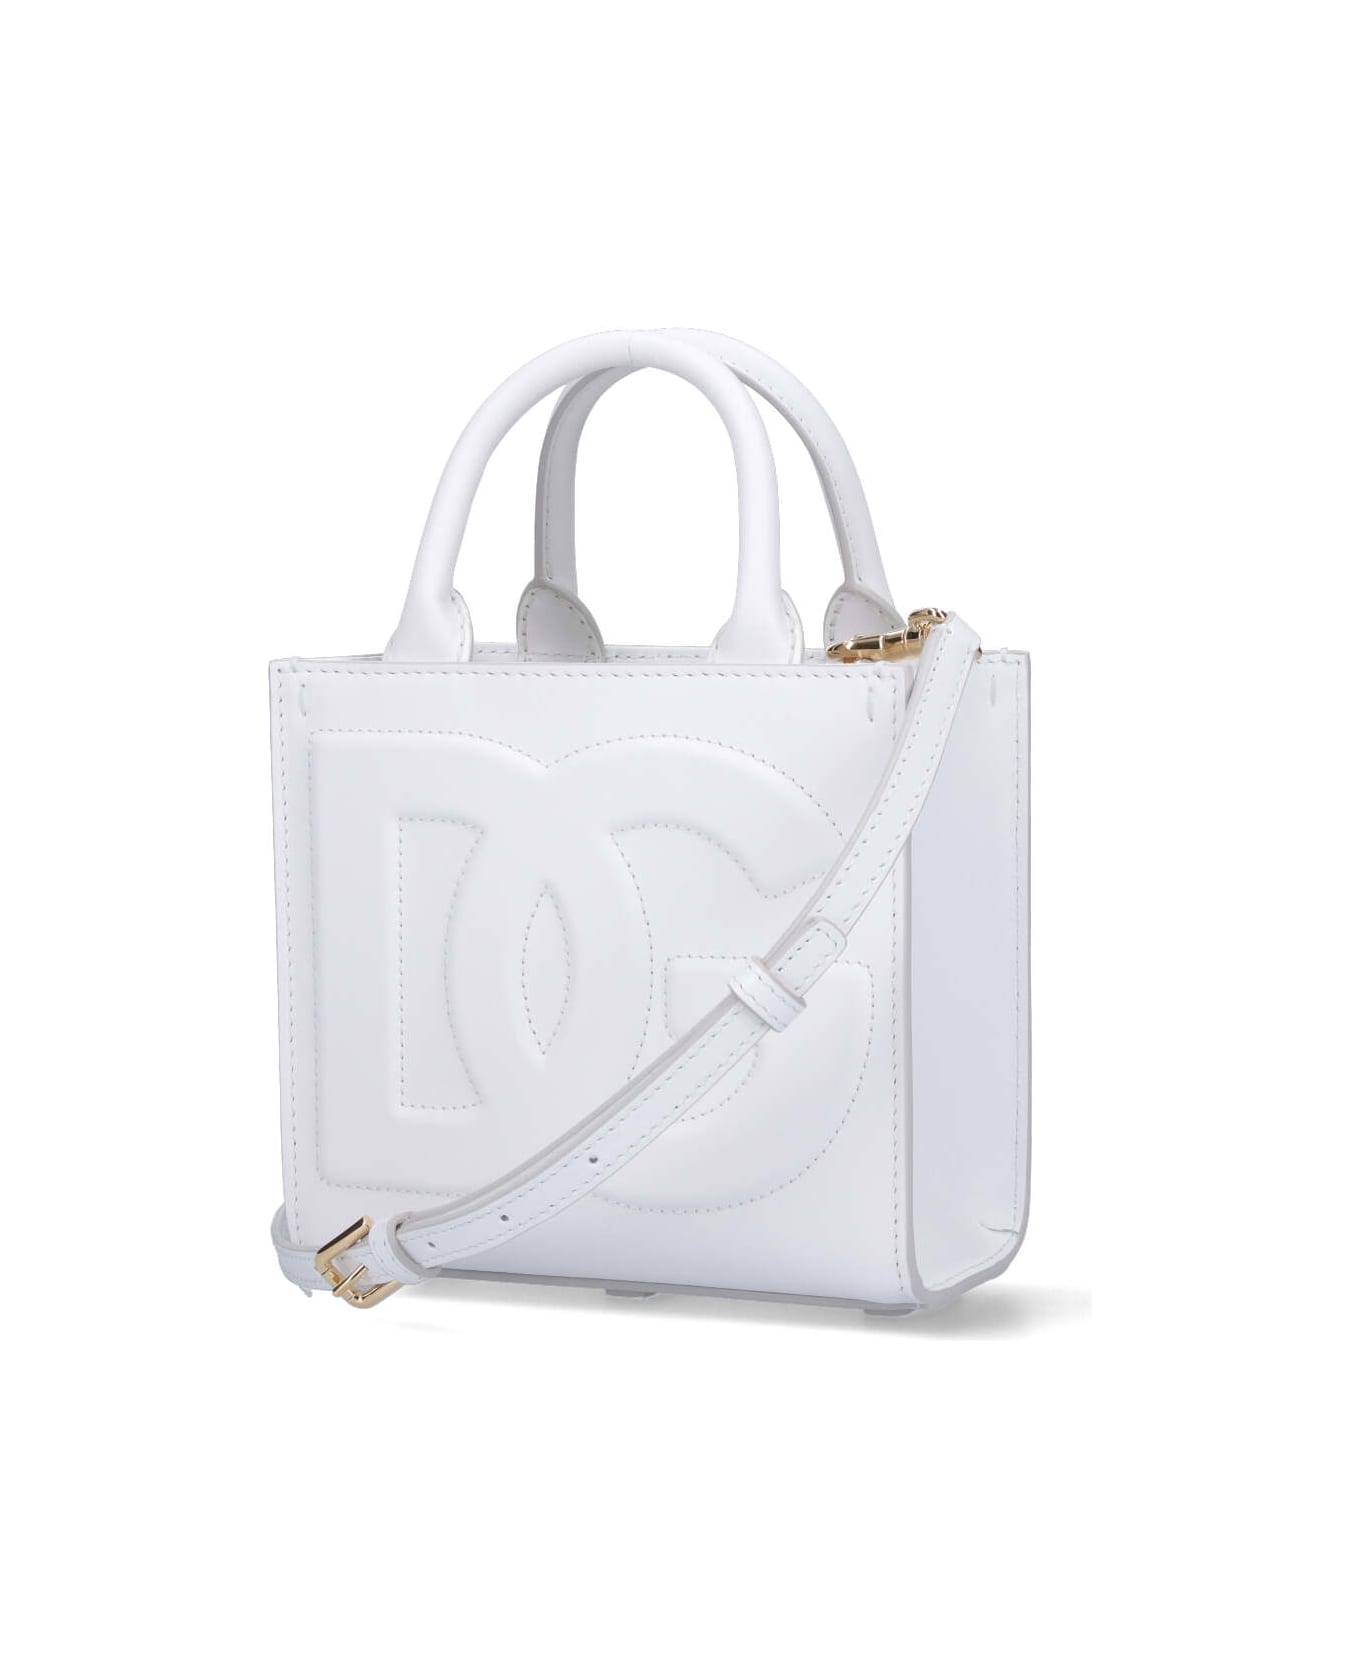 Dolce & Gabbana 'dg' Mini Tote - White トートバッグ